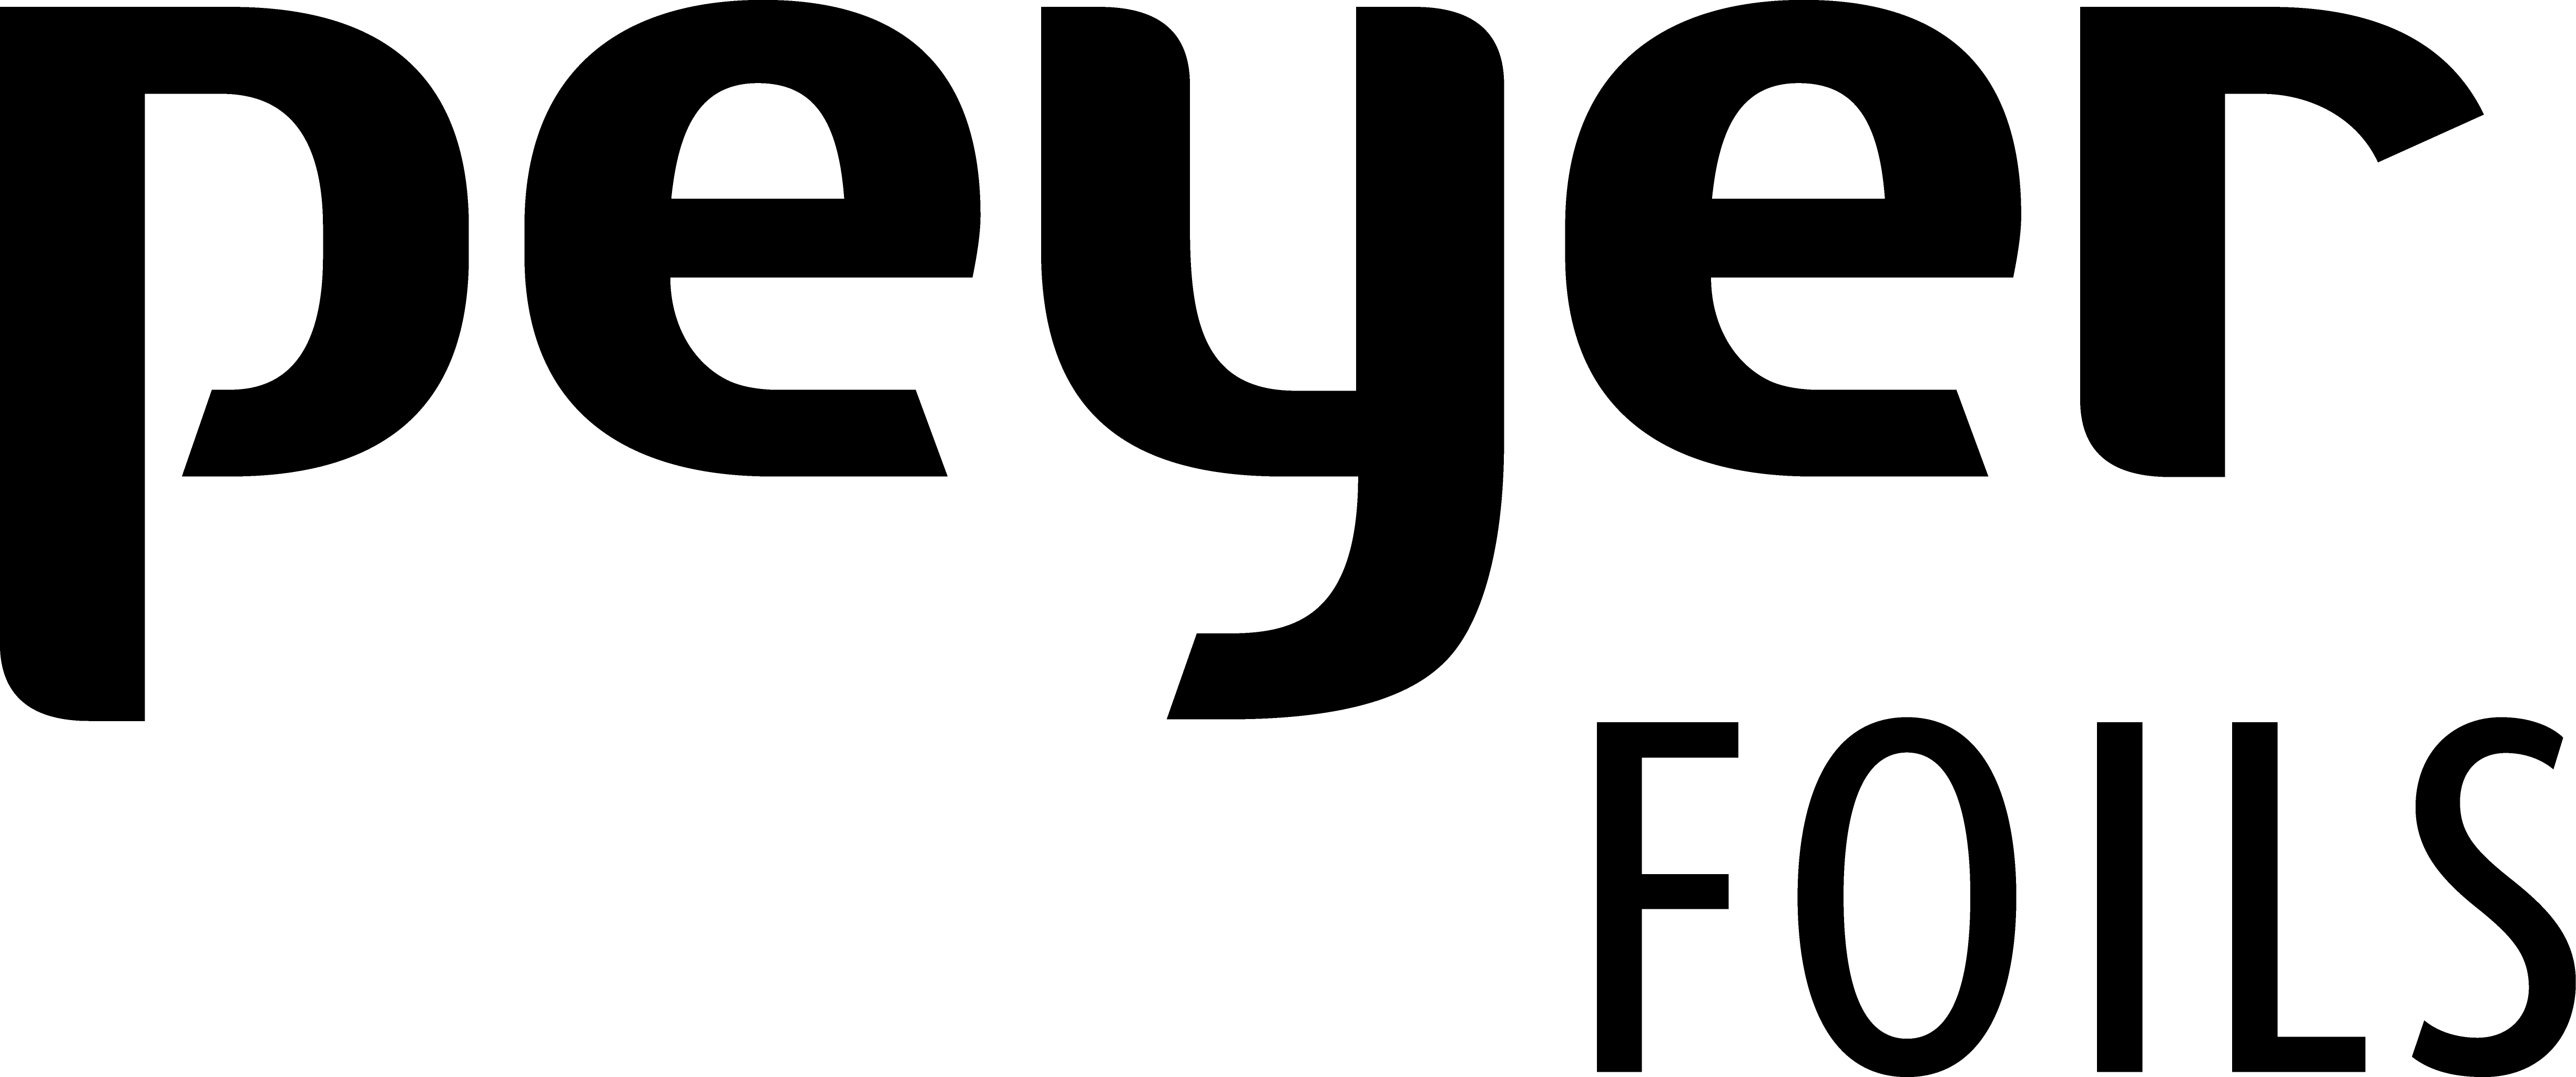 Peyer Foils logo